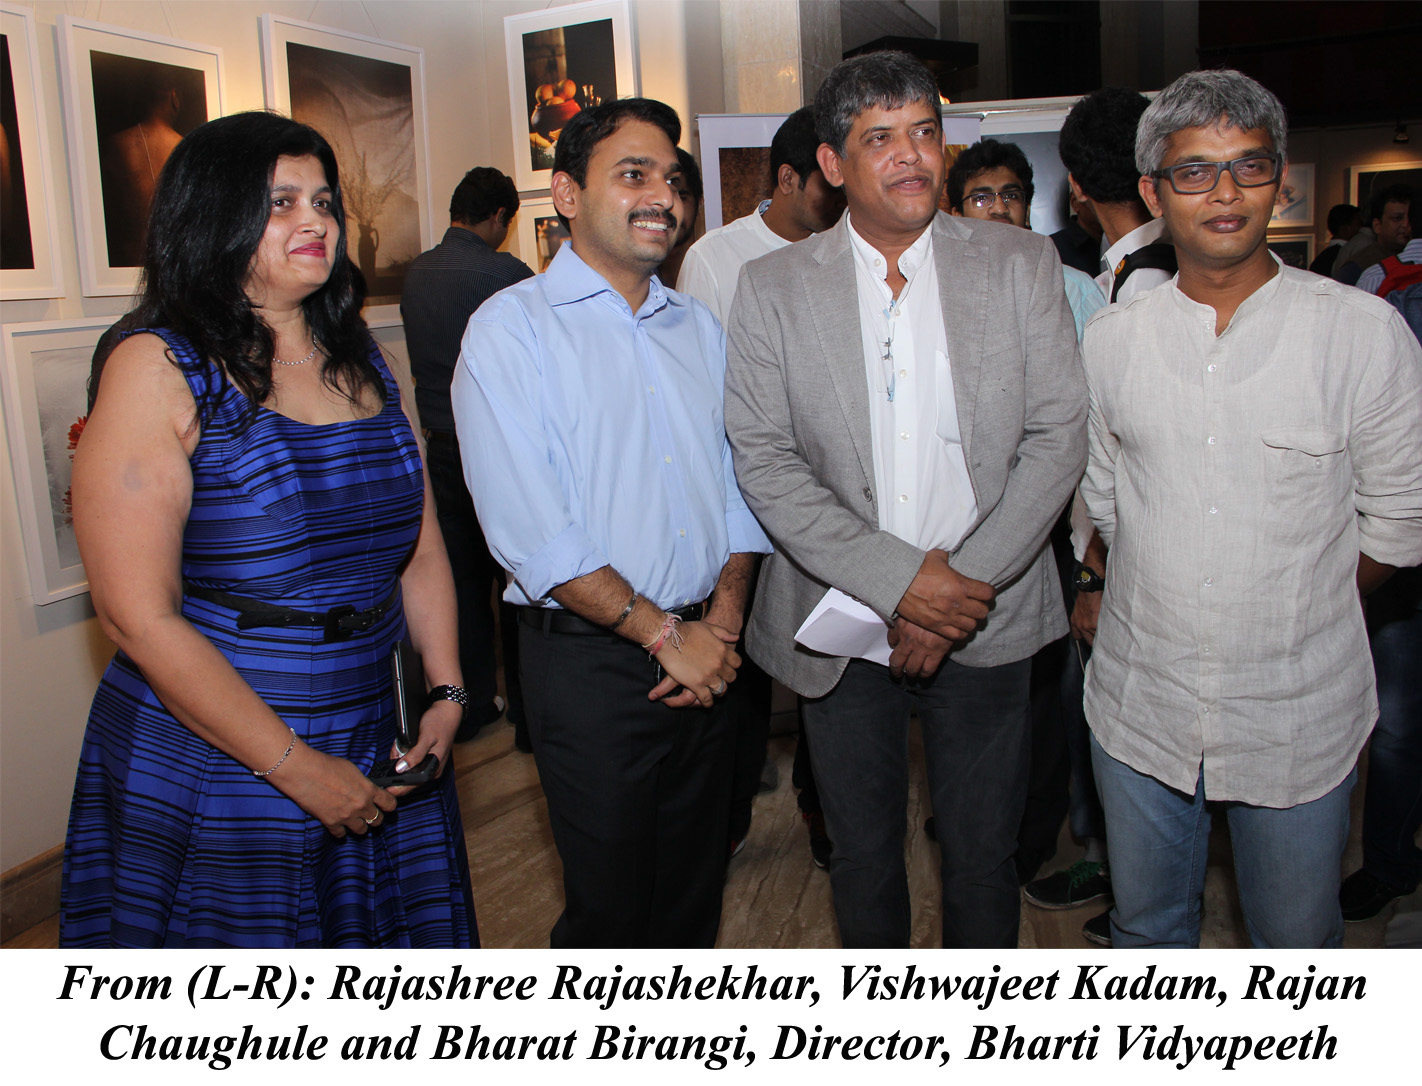 Rajashree Rajashekhar, Vishwajeet Kadam, Rajan Chaughule and Bharat Birangi